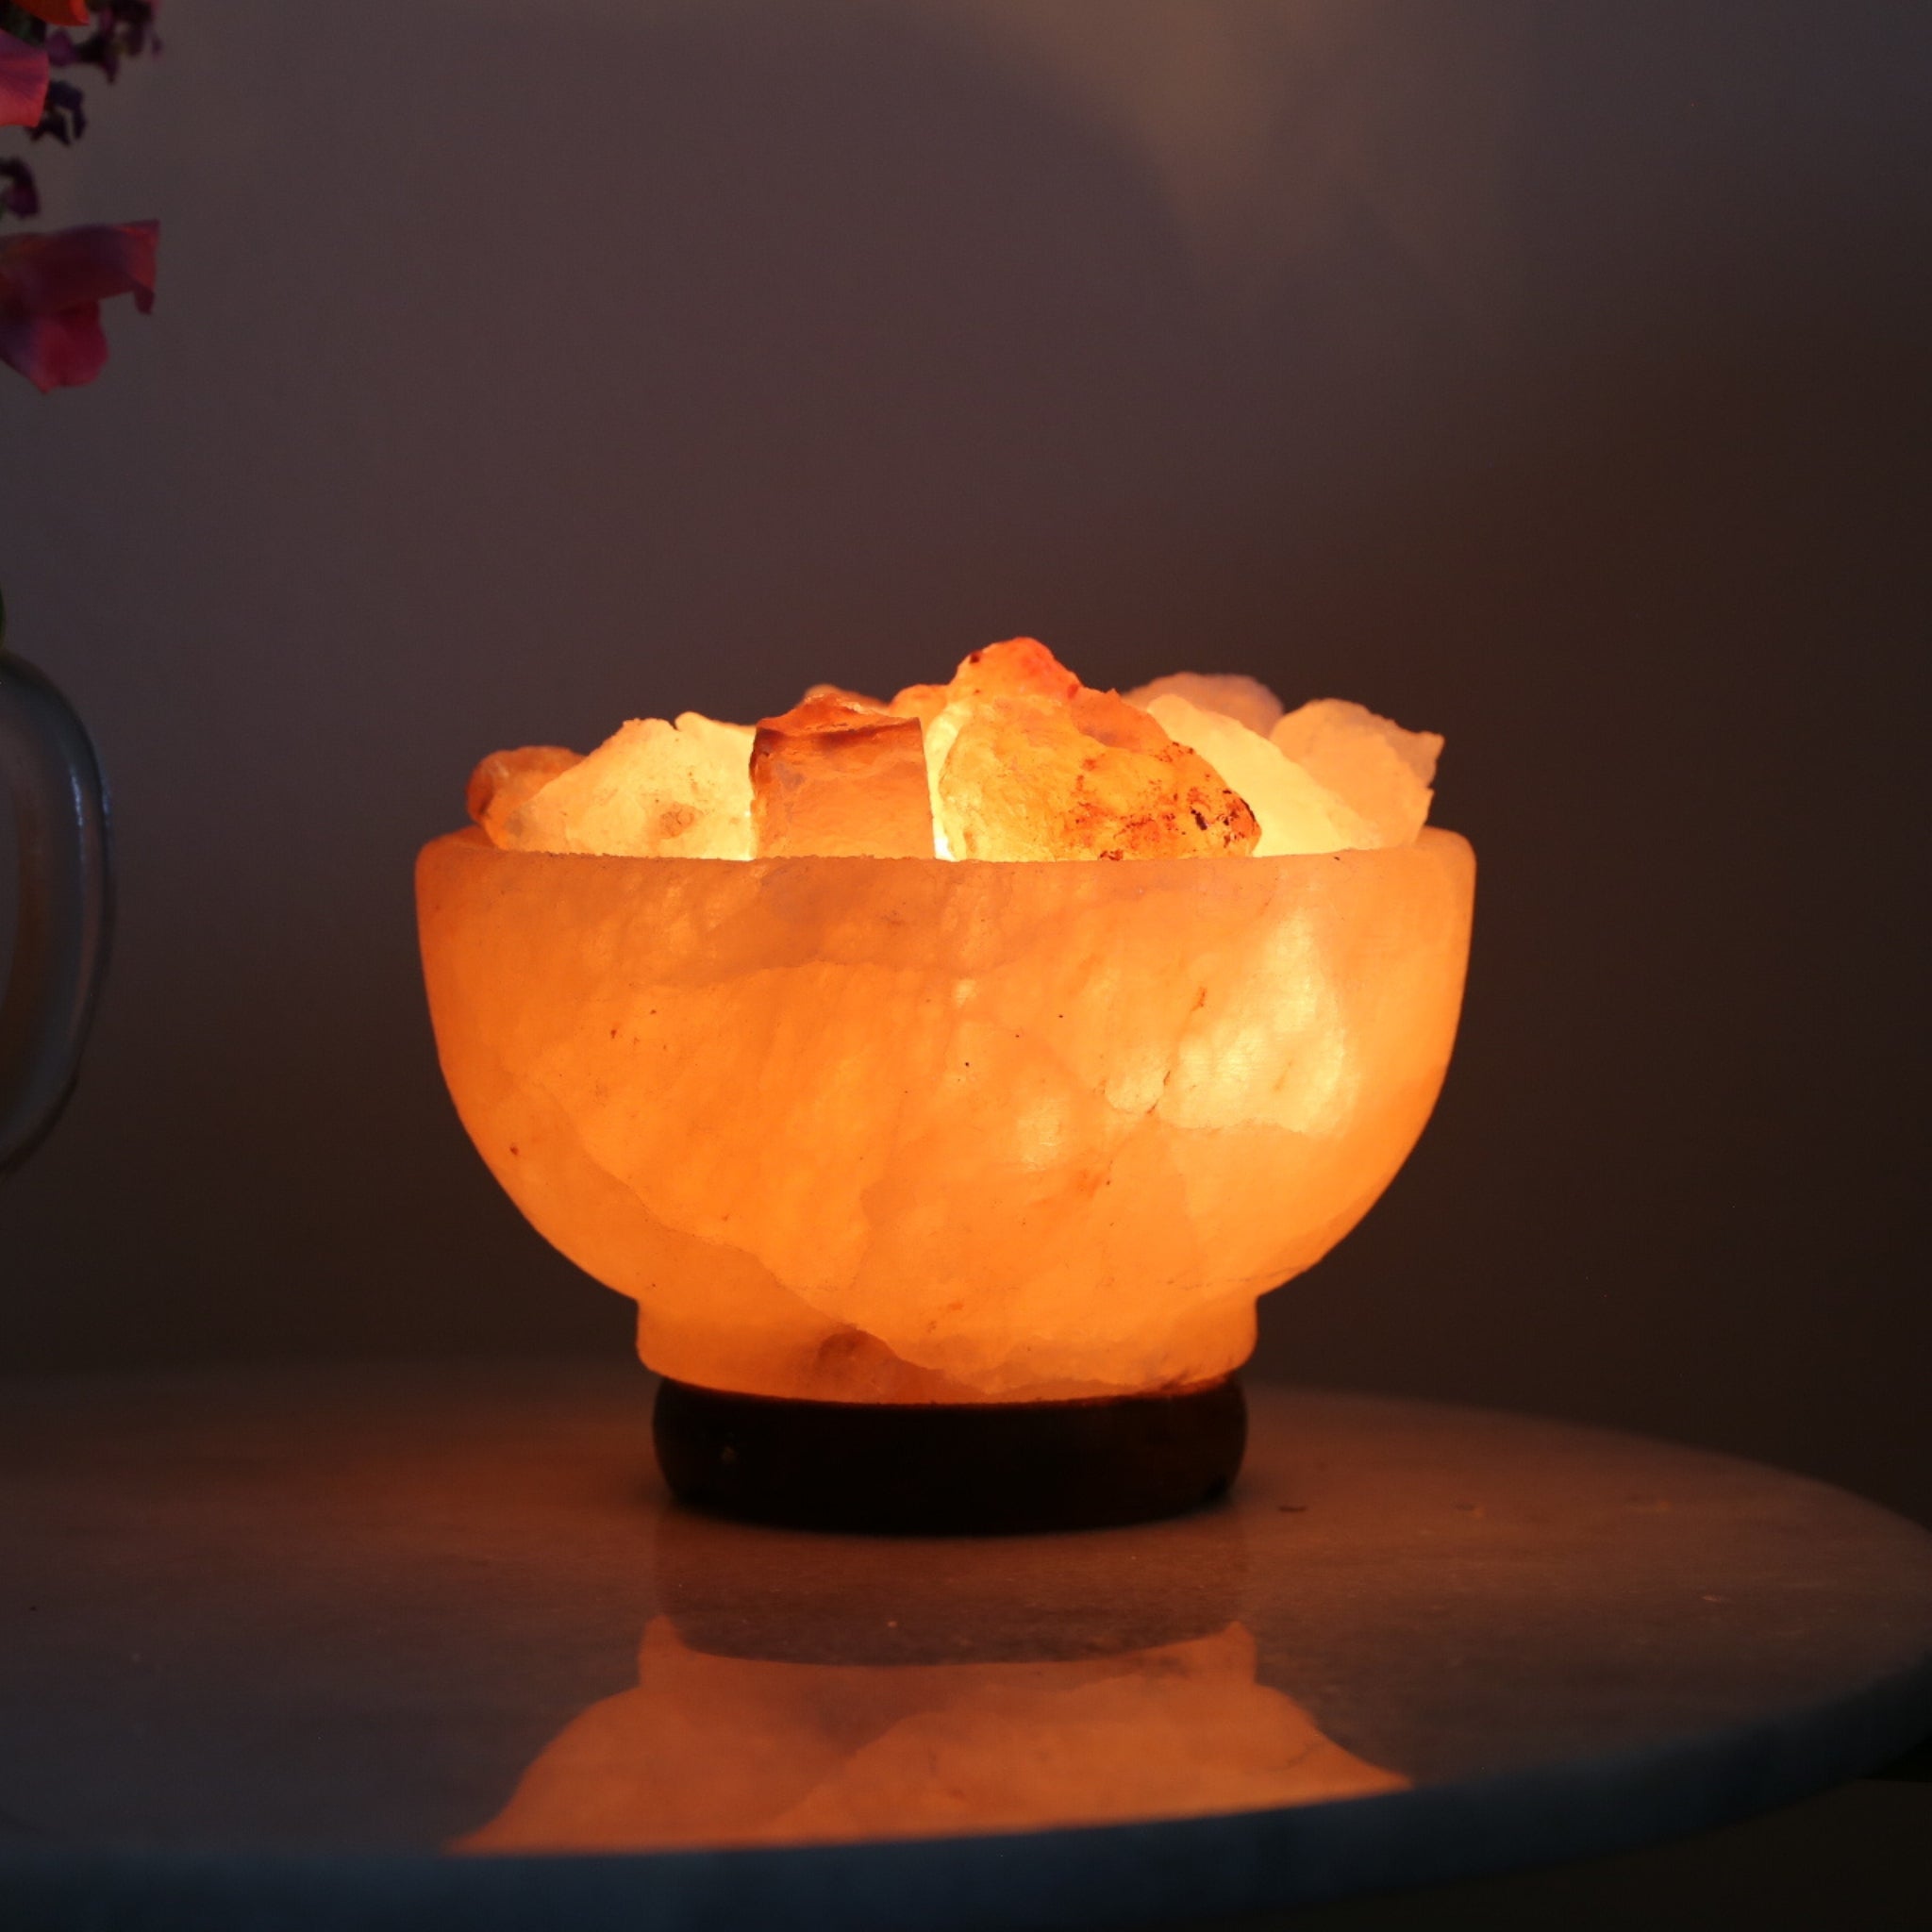 Himalayan Salt Lamp Fire Bowl (Chunks)